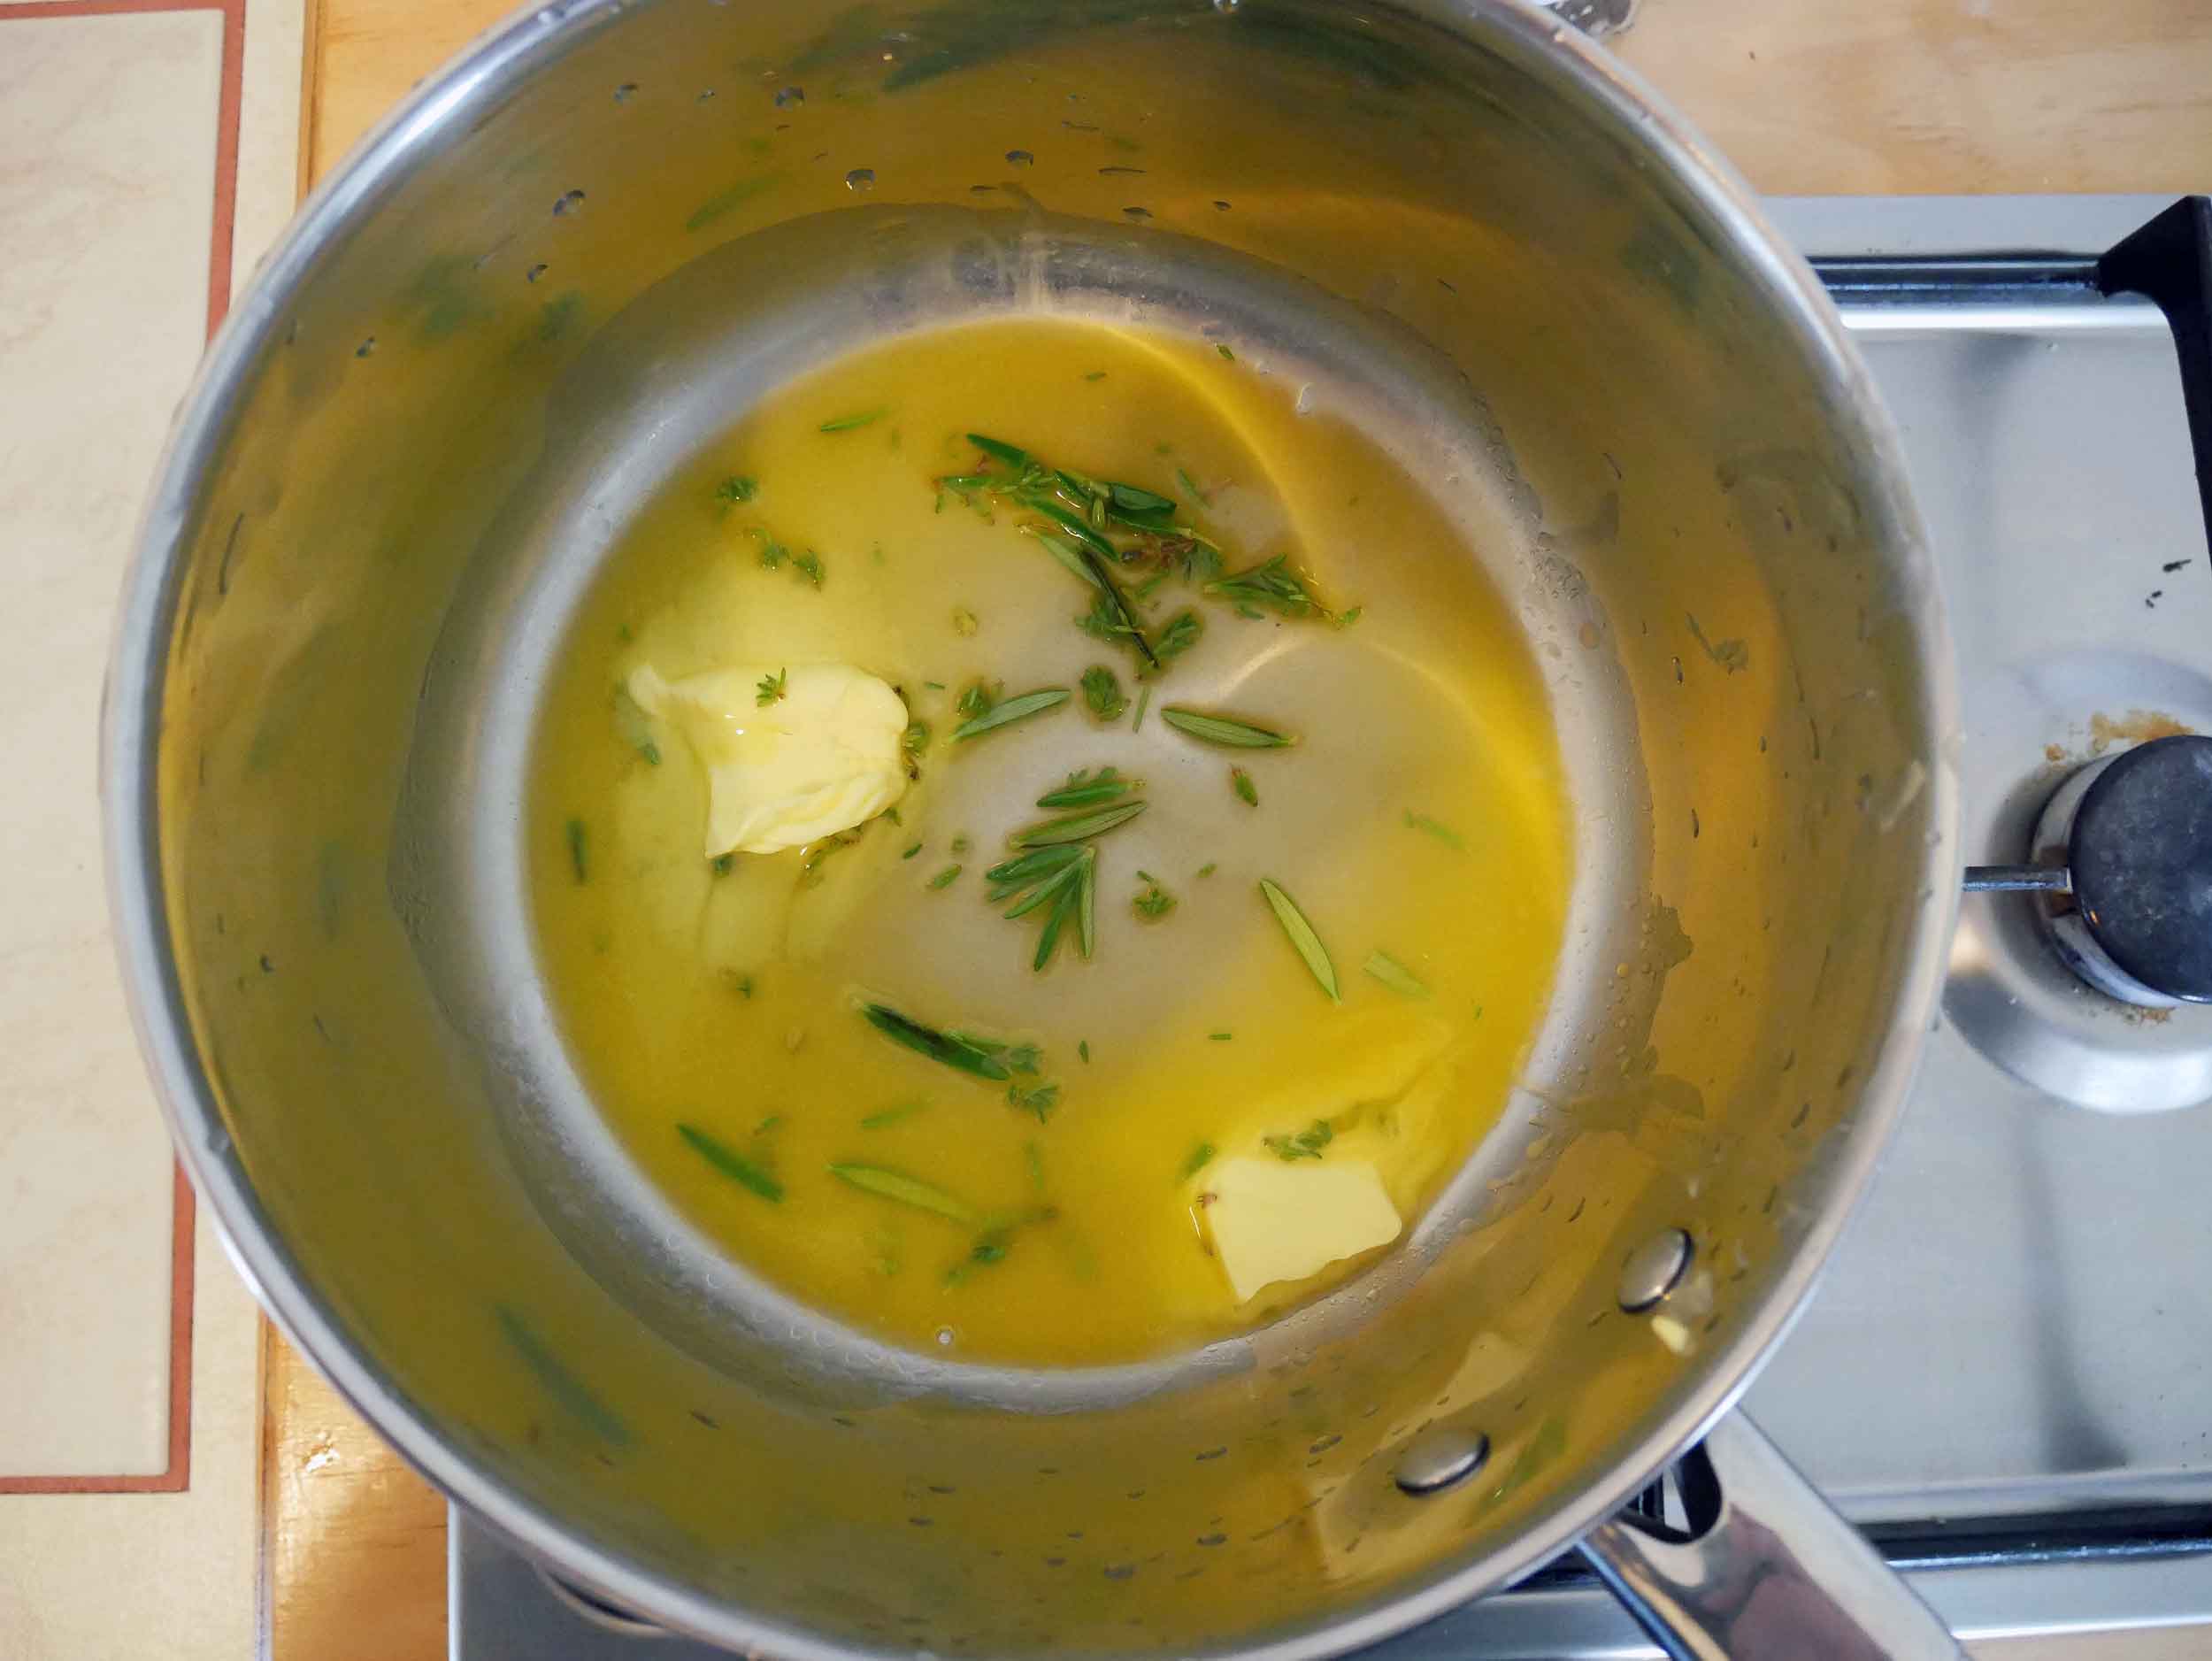  Melt butter then add fresh herbs for flavor (2-3mins).&nbsp; 